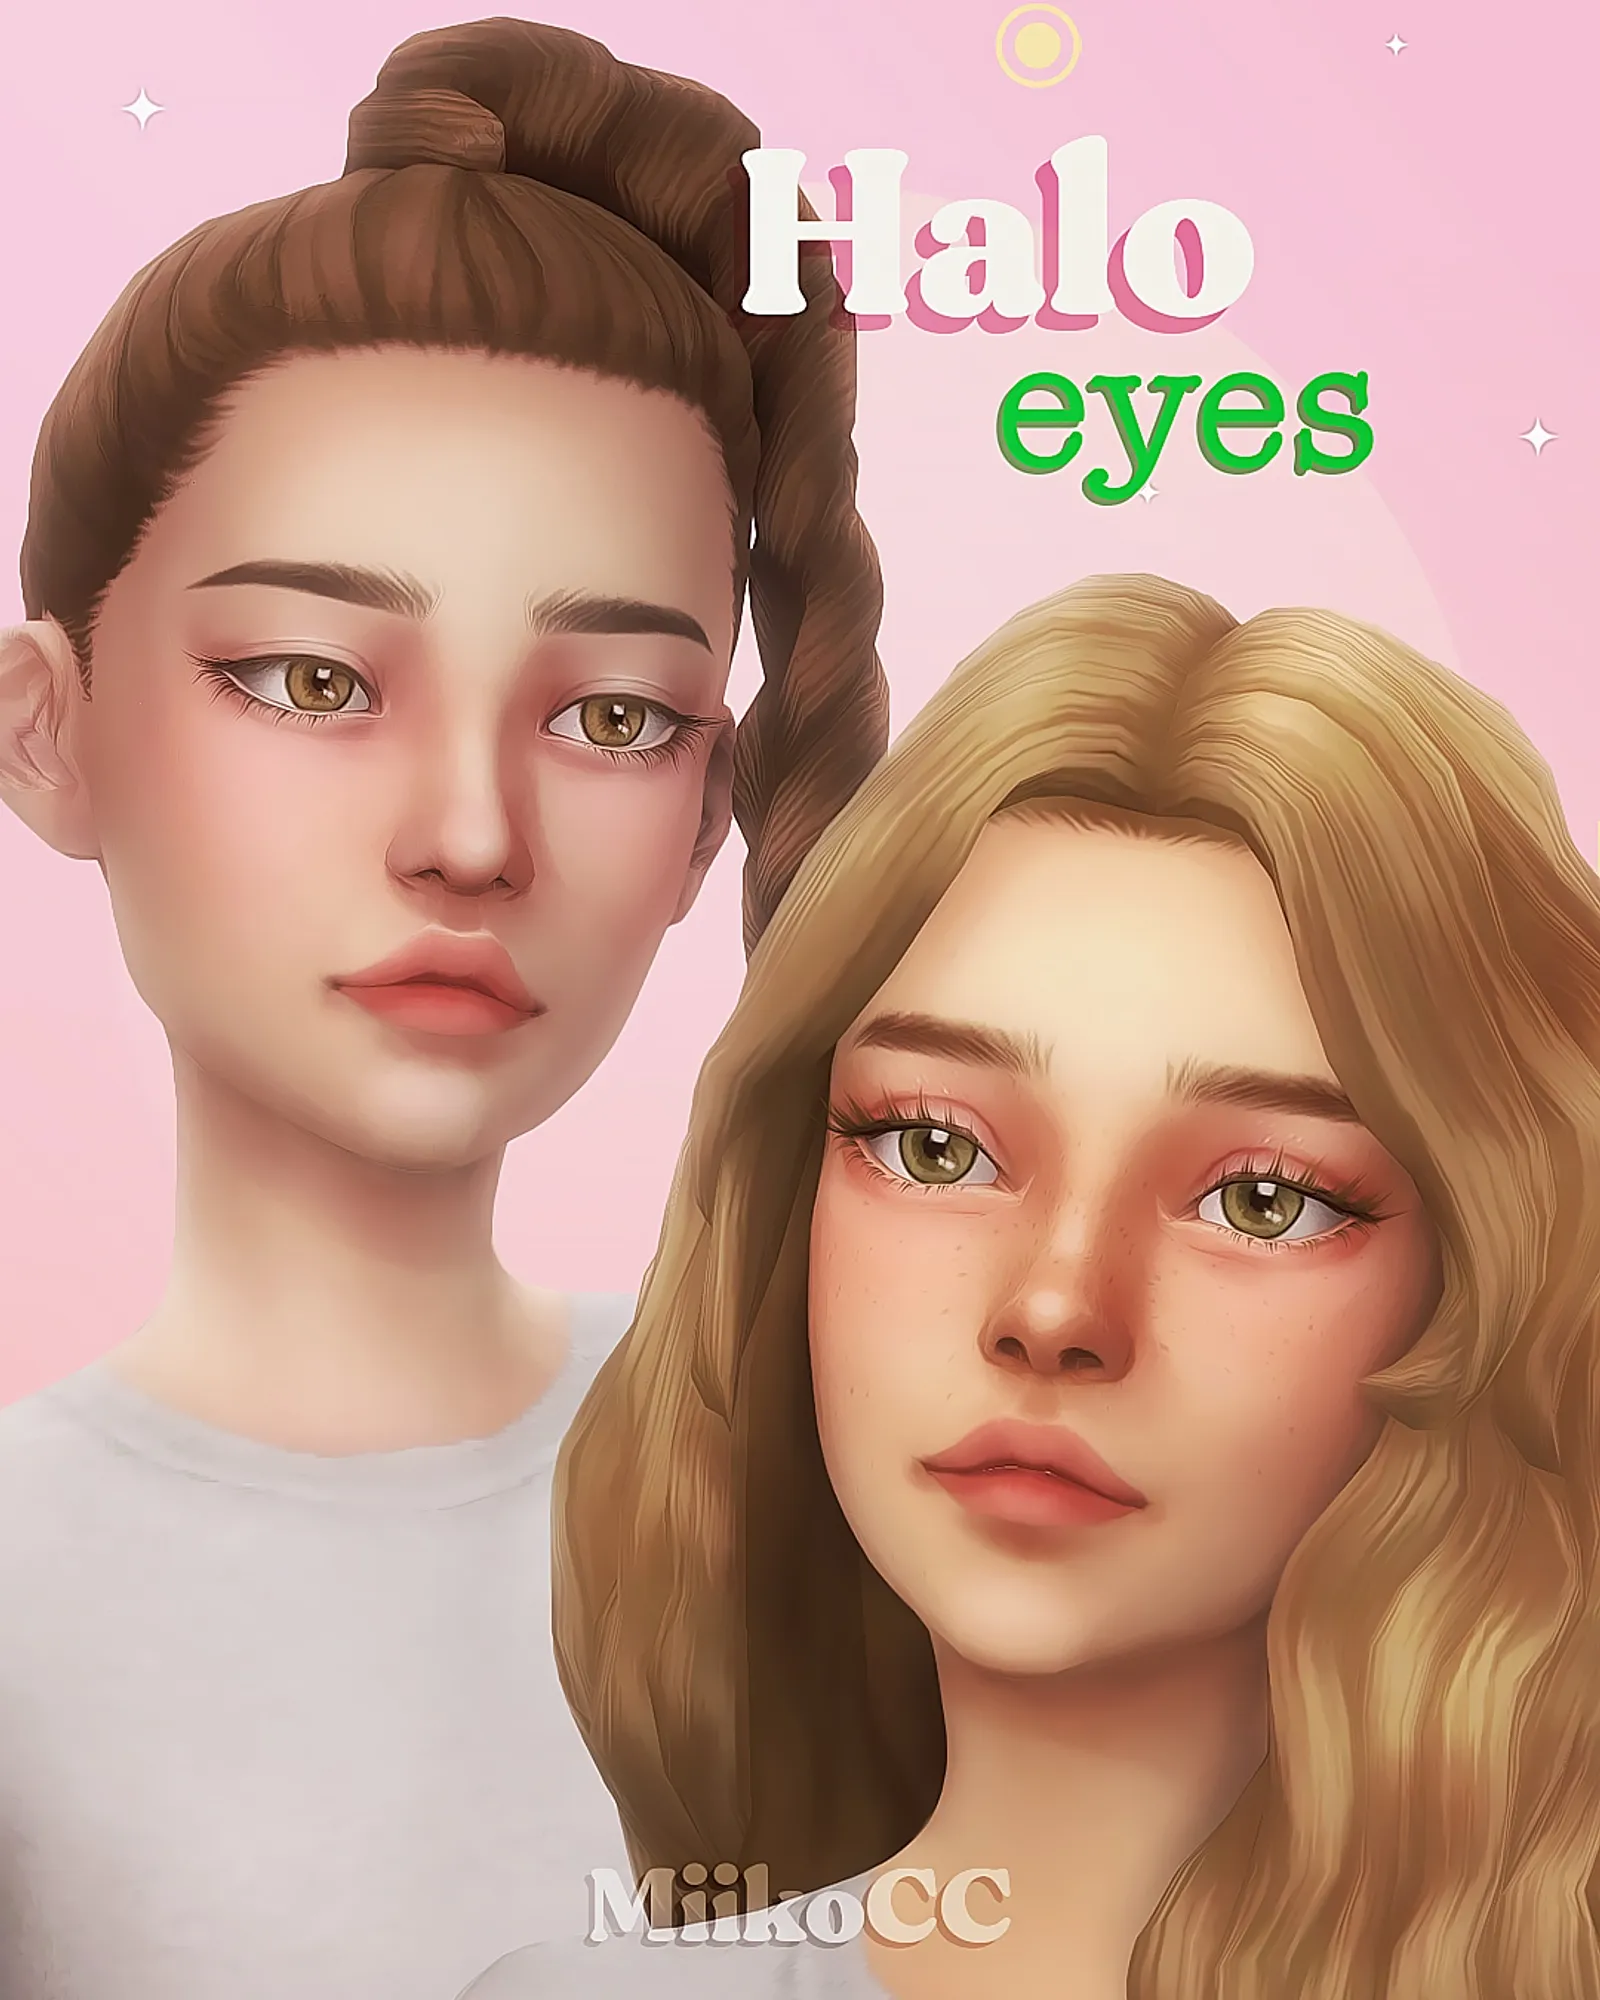 Halo eyes